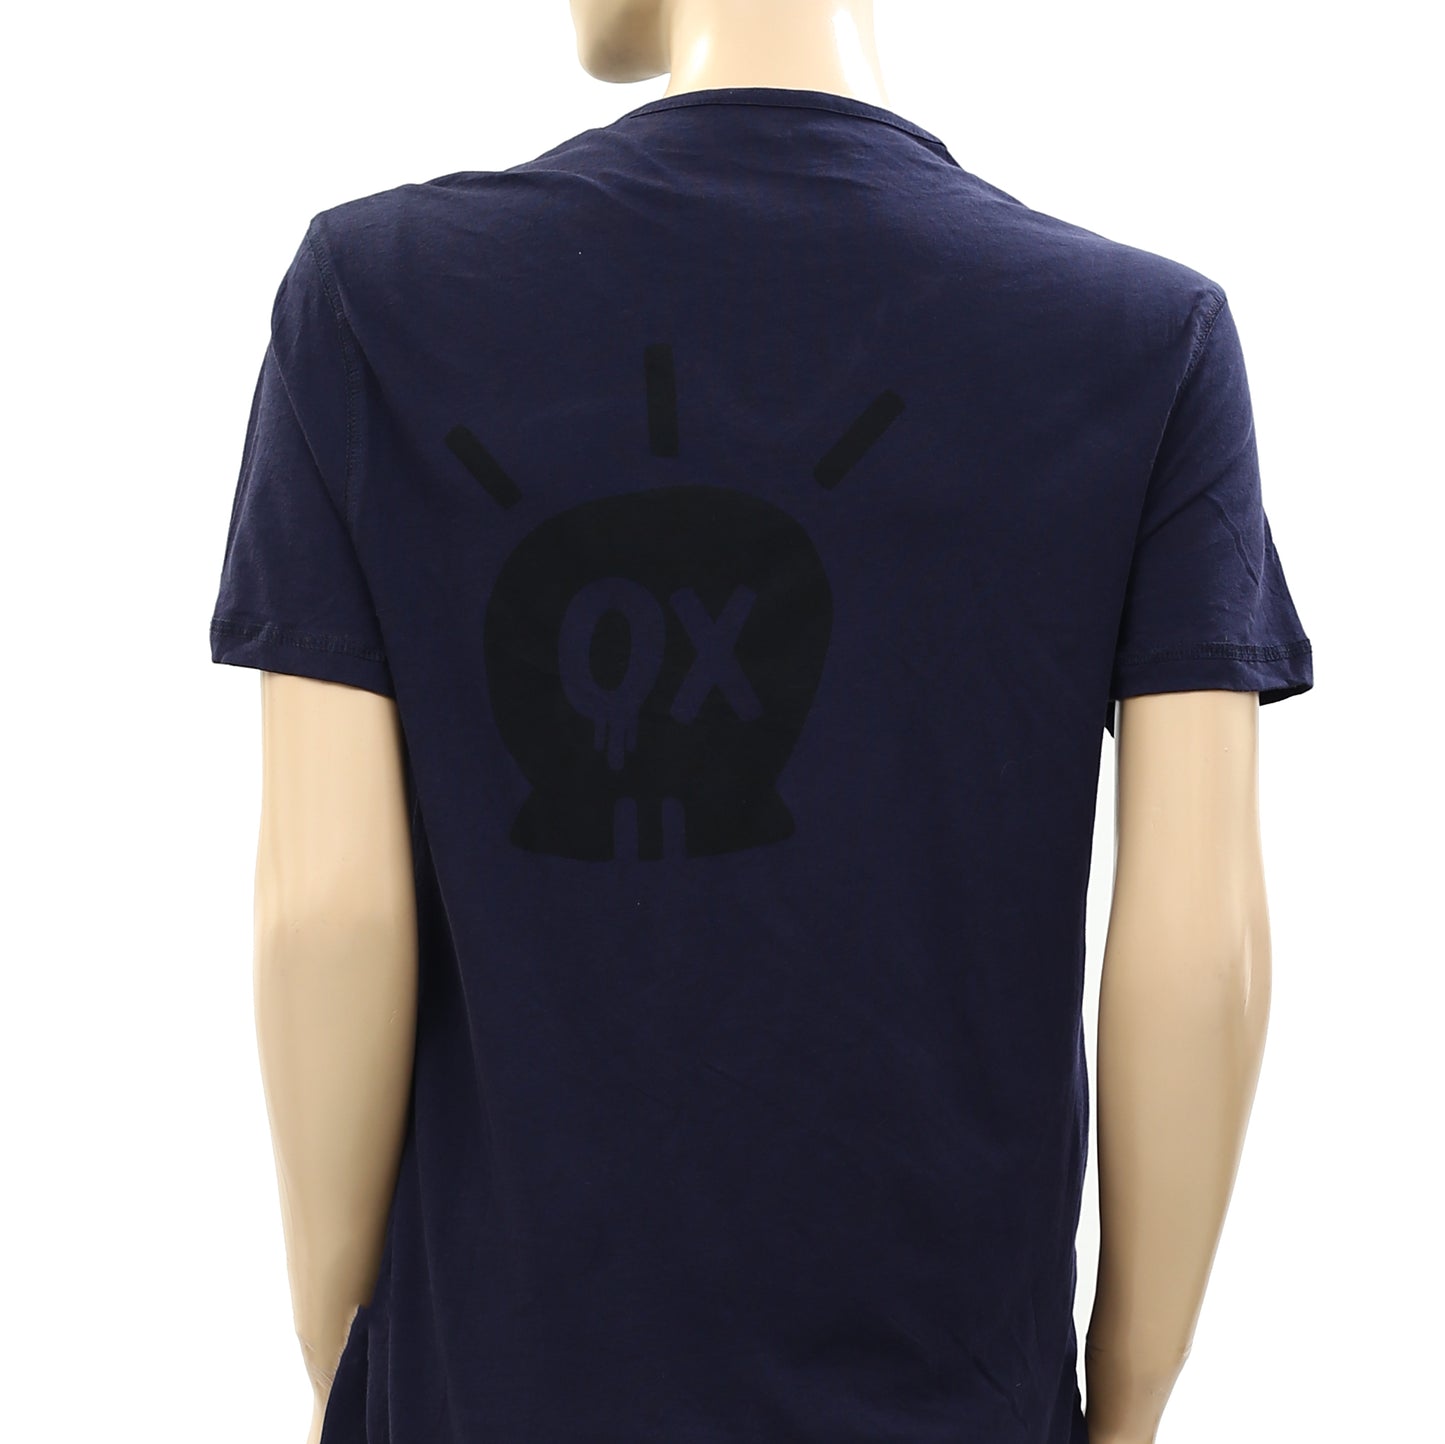 Zadig & Voltaire Monastir MC Jormi OX T-Shirt Tunic Top